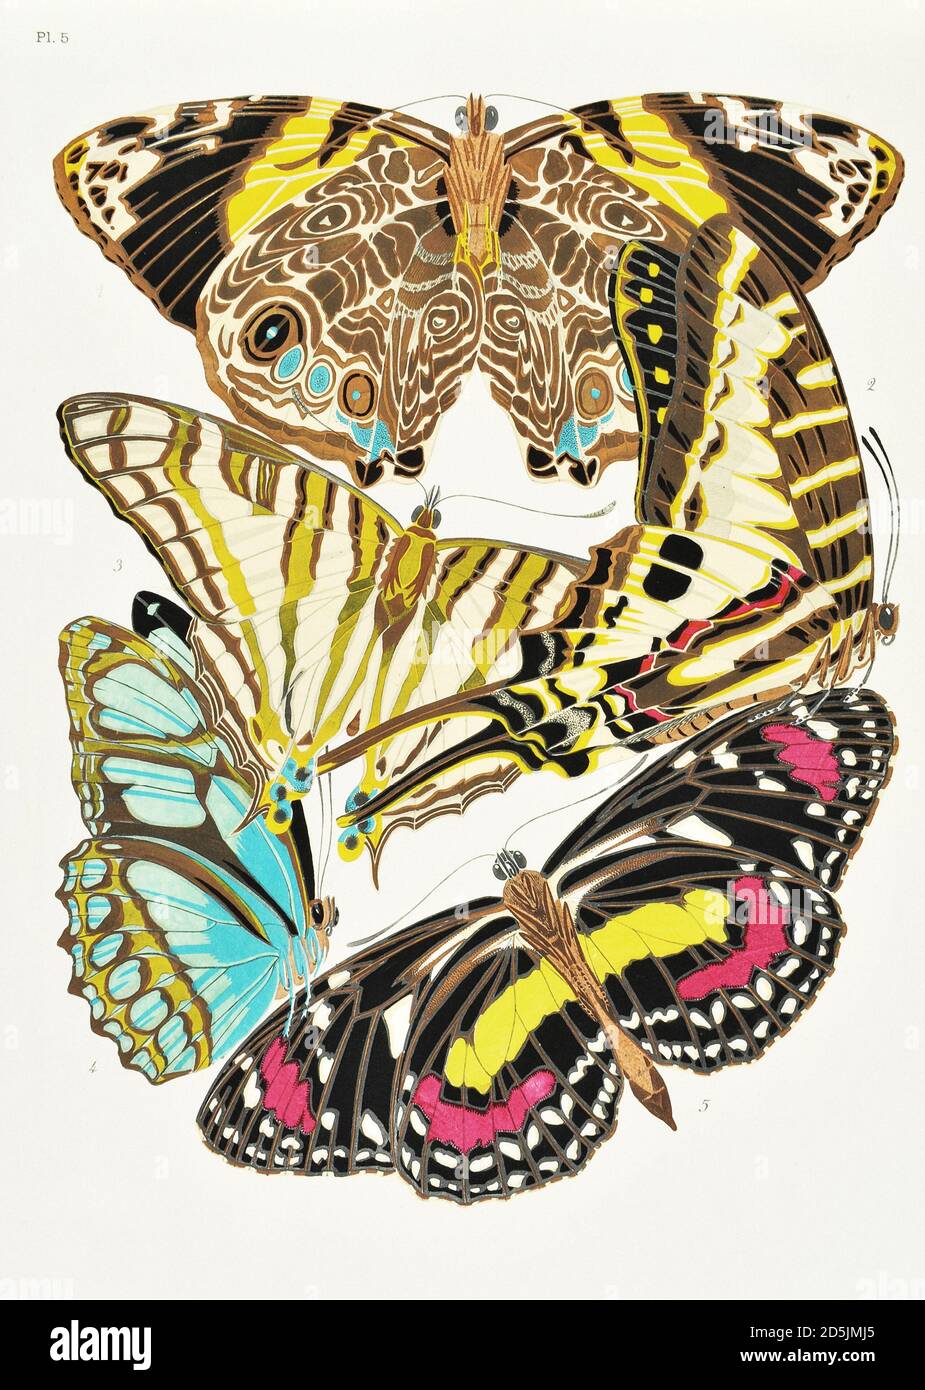 Farfalle: Venti pannelli fototype colorati al modello. PL V 1. Smyrna blomfildia (Messico) 2. Papilio policenes (Guiana) 3. Cyrestis elegans (Mad Foto Stock